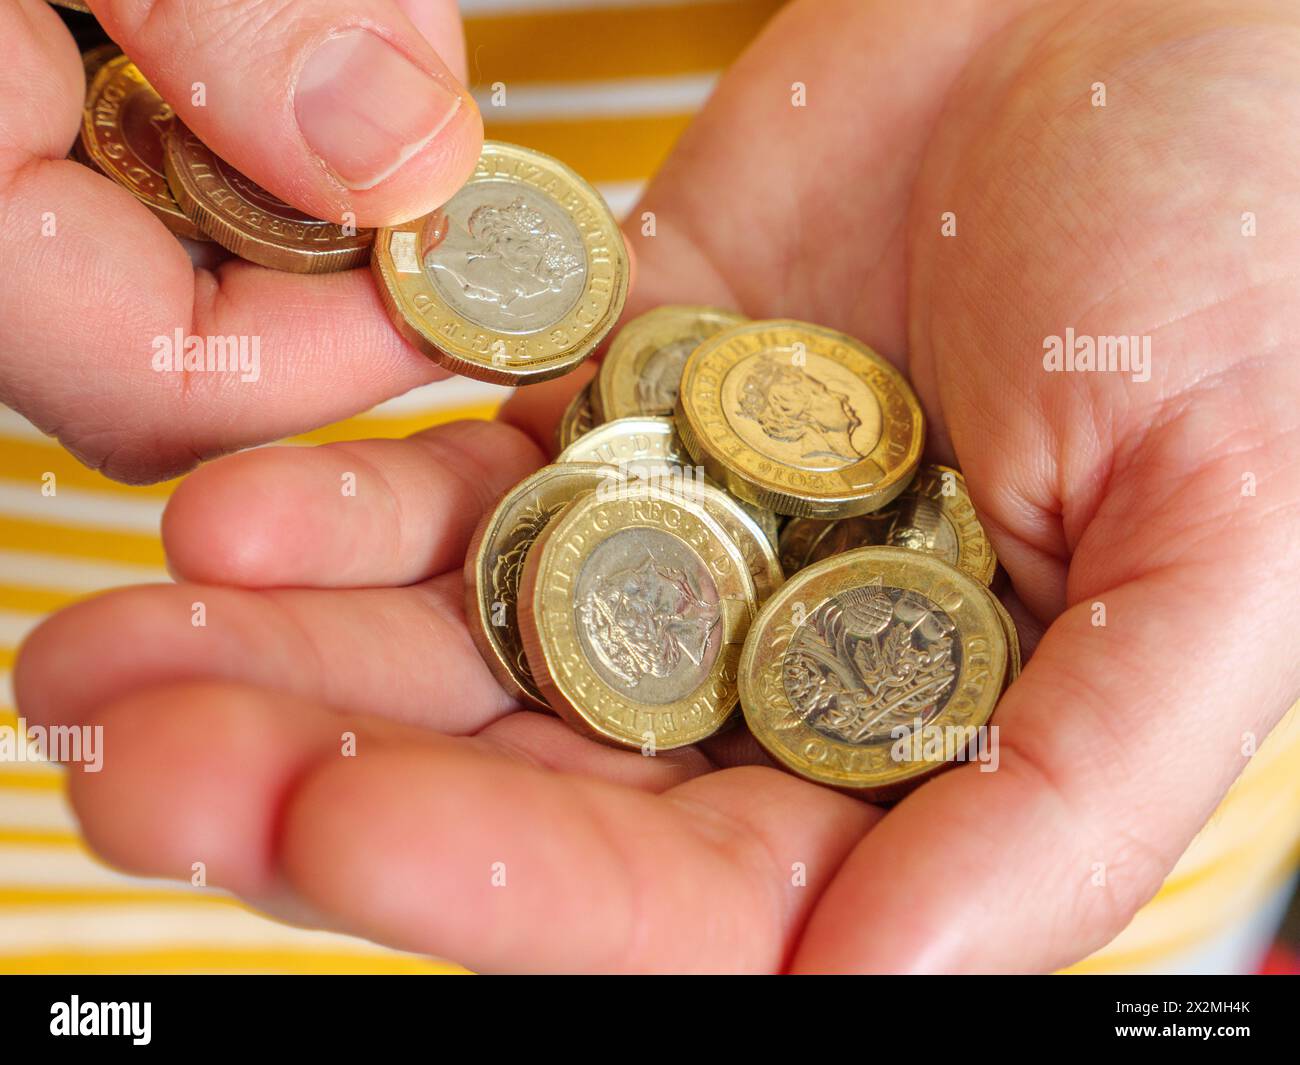 Gros plan des mains comptant l'argent comptant dans les pièces de 1 livre du Royaume-Uni Banque D'Images